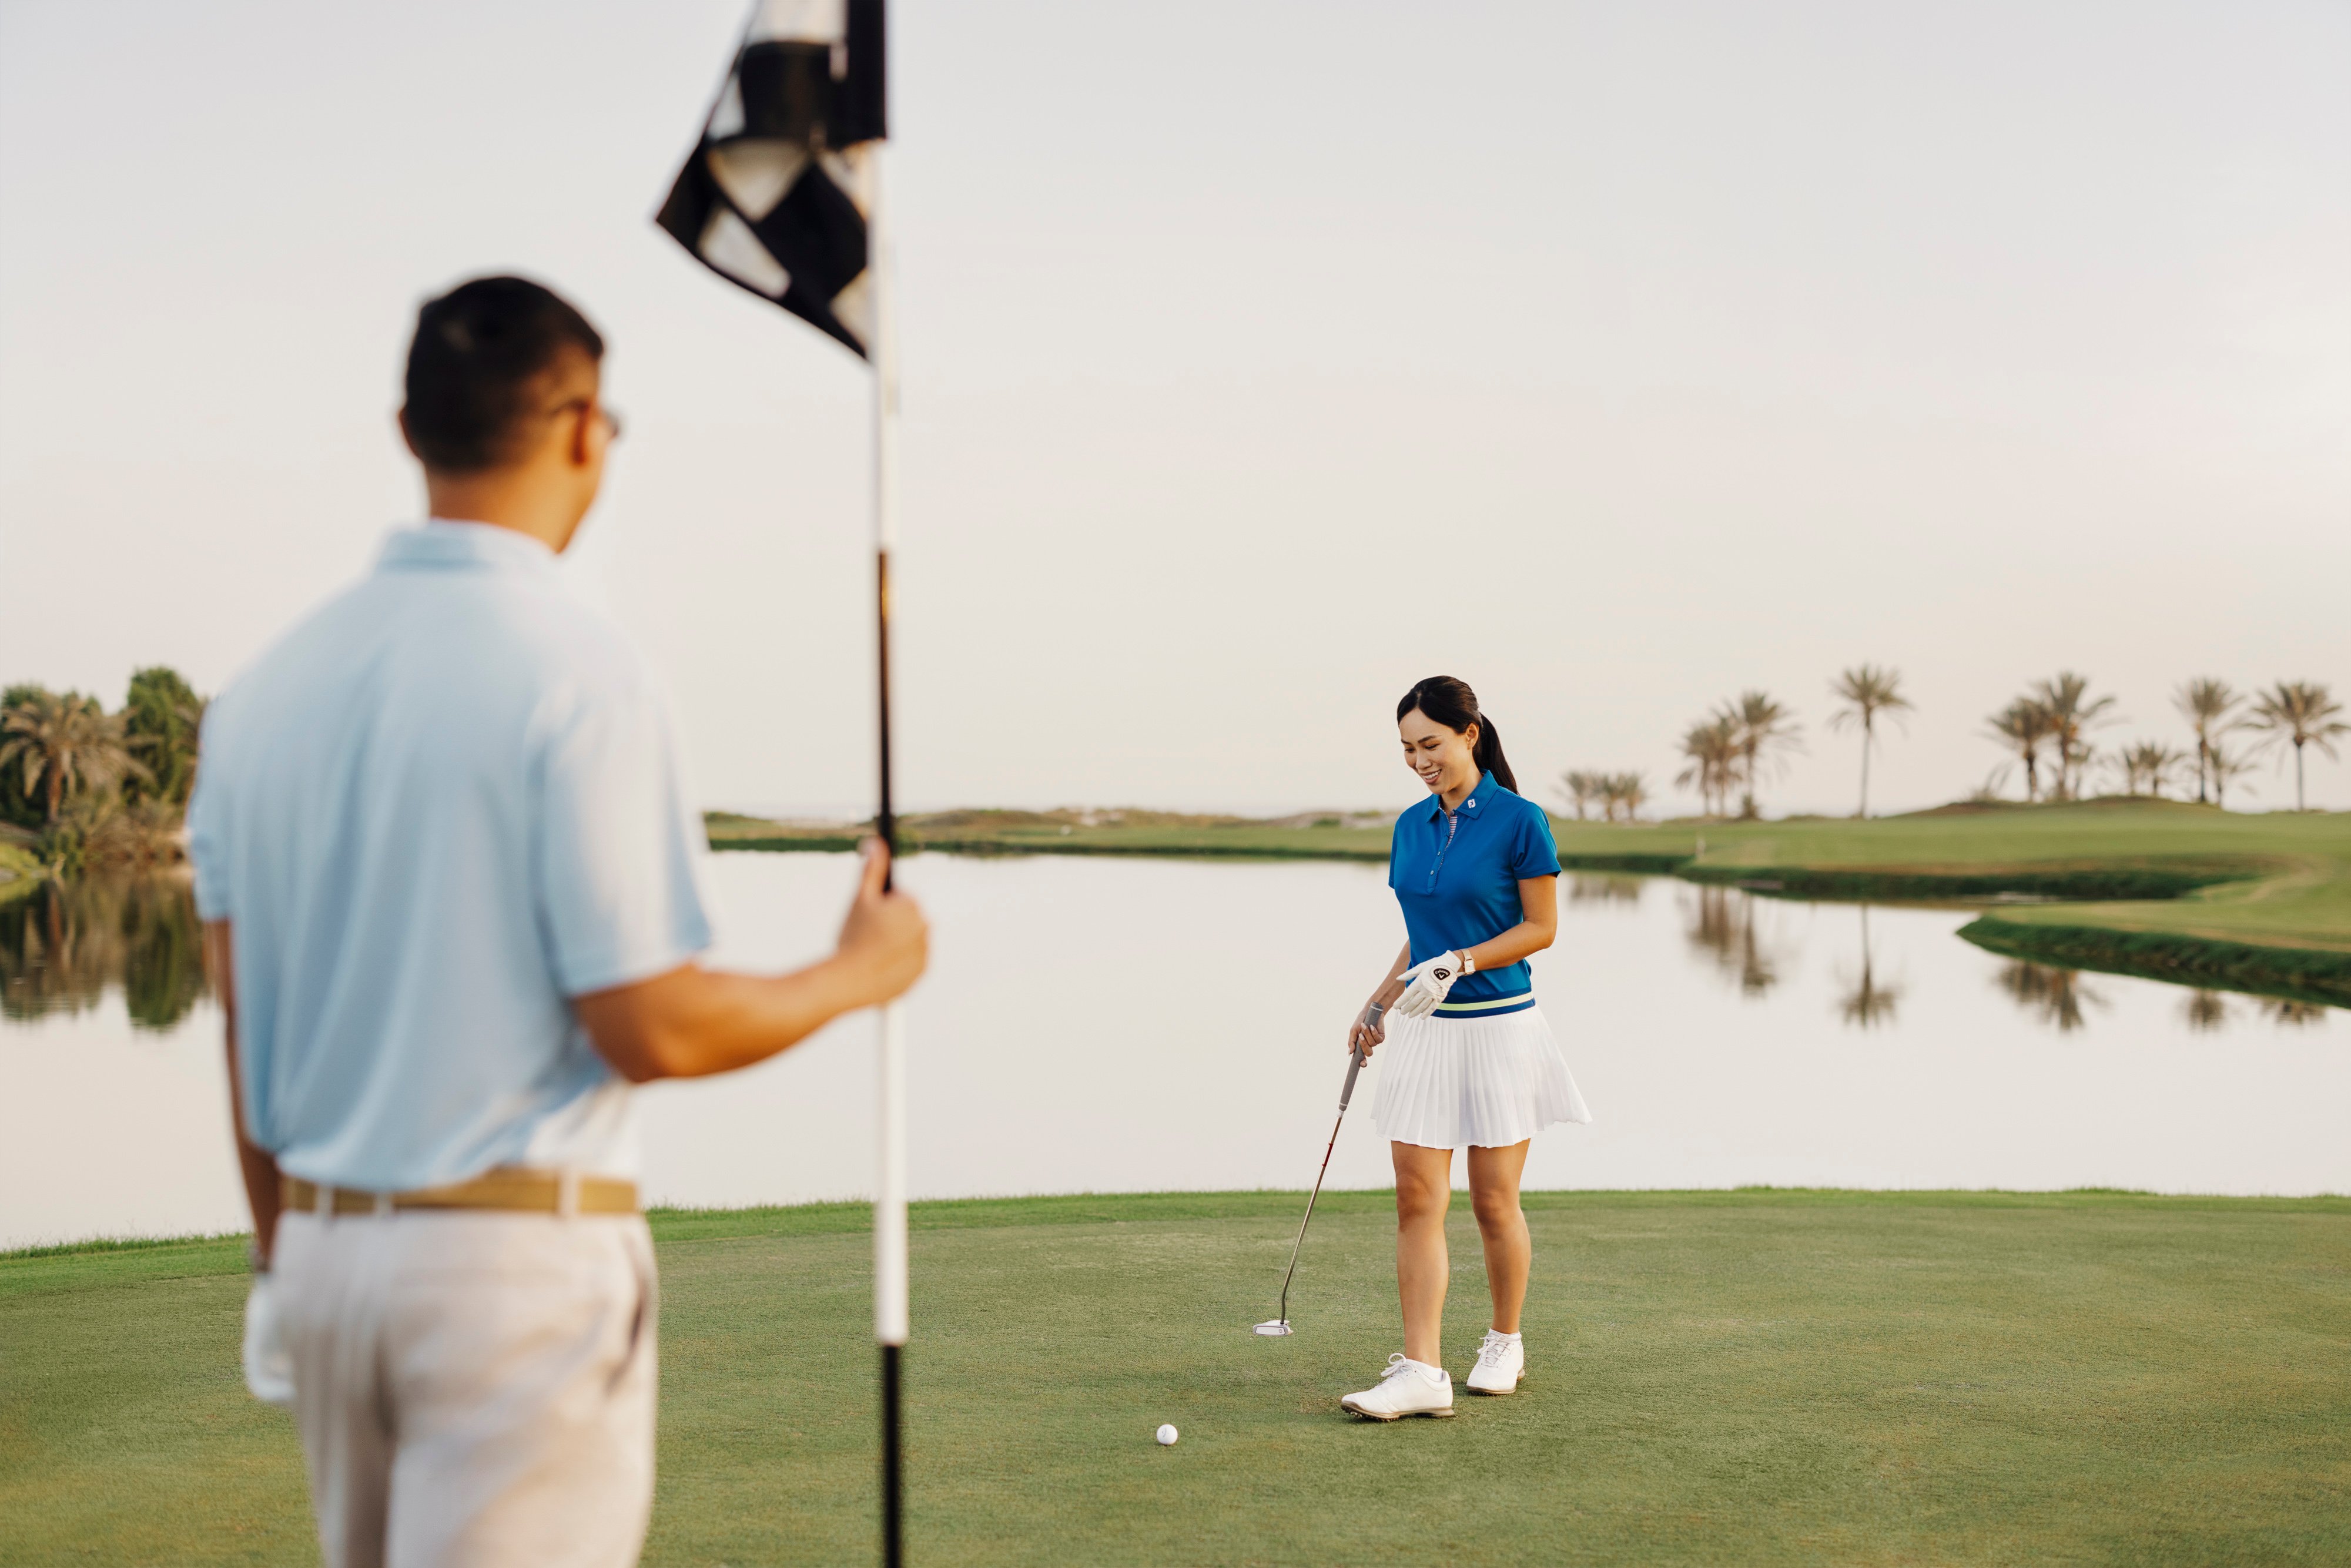 מועדון הגולף חוף סעדיית – Saadiyat Beach Golf Club